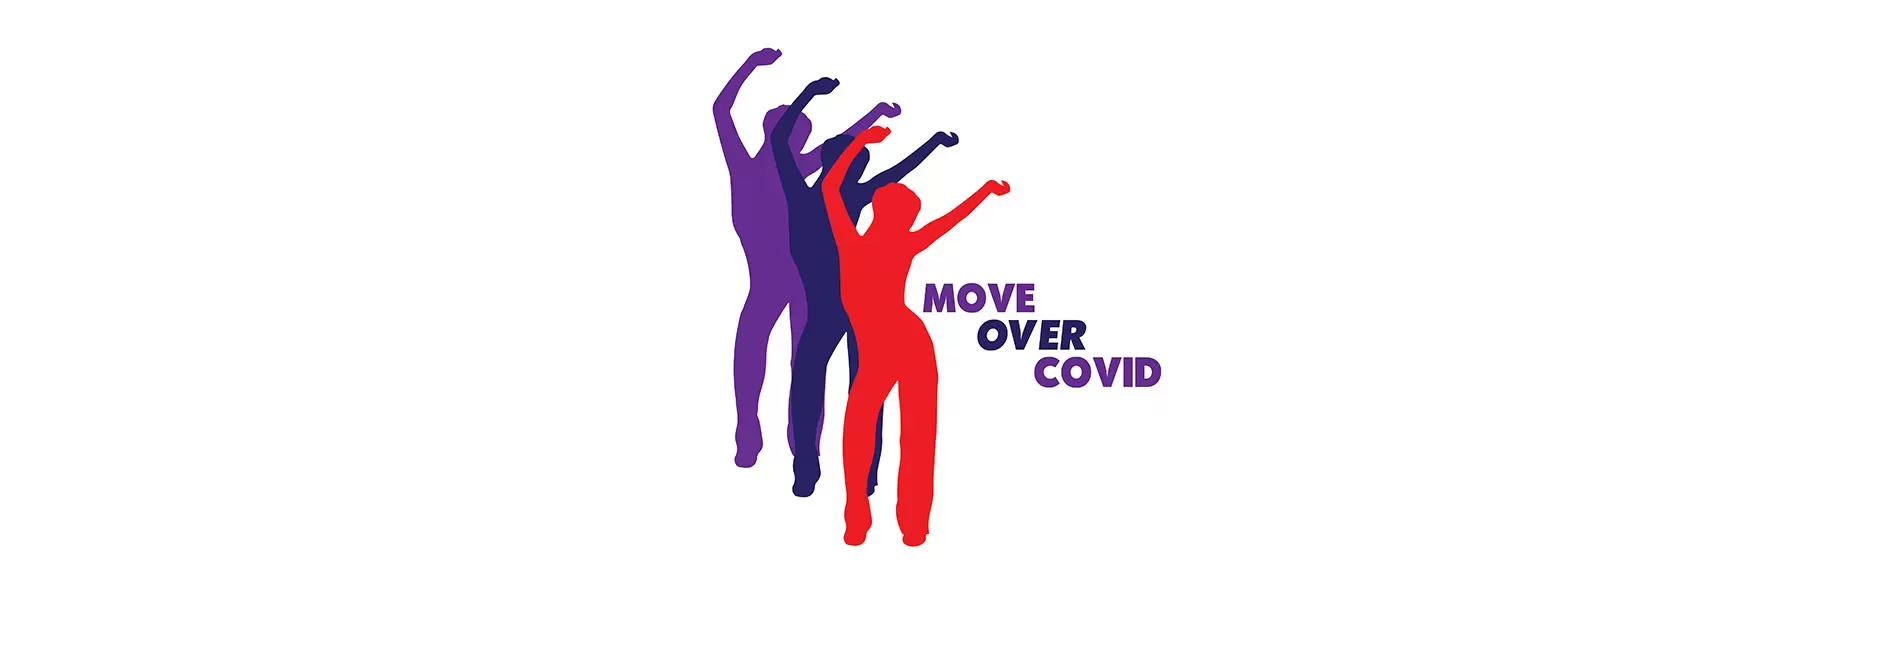 #MoveOverCovid